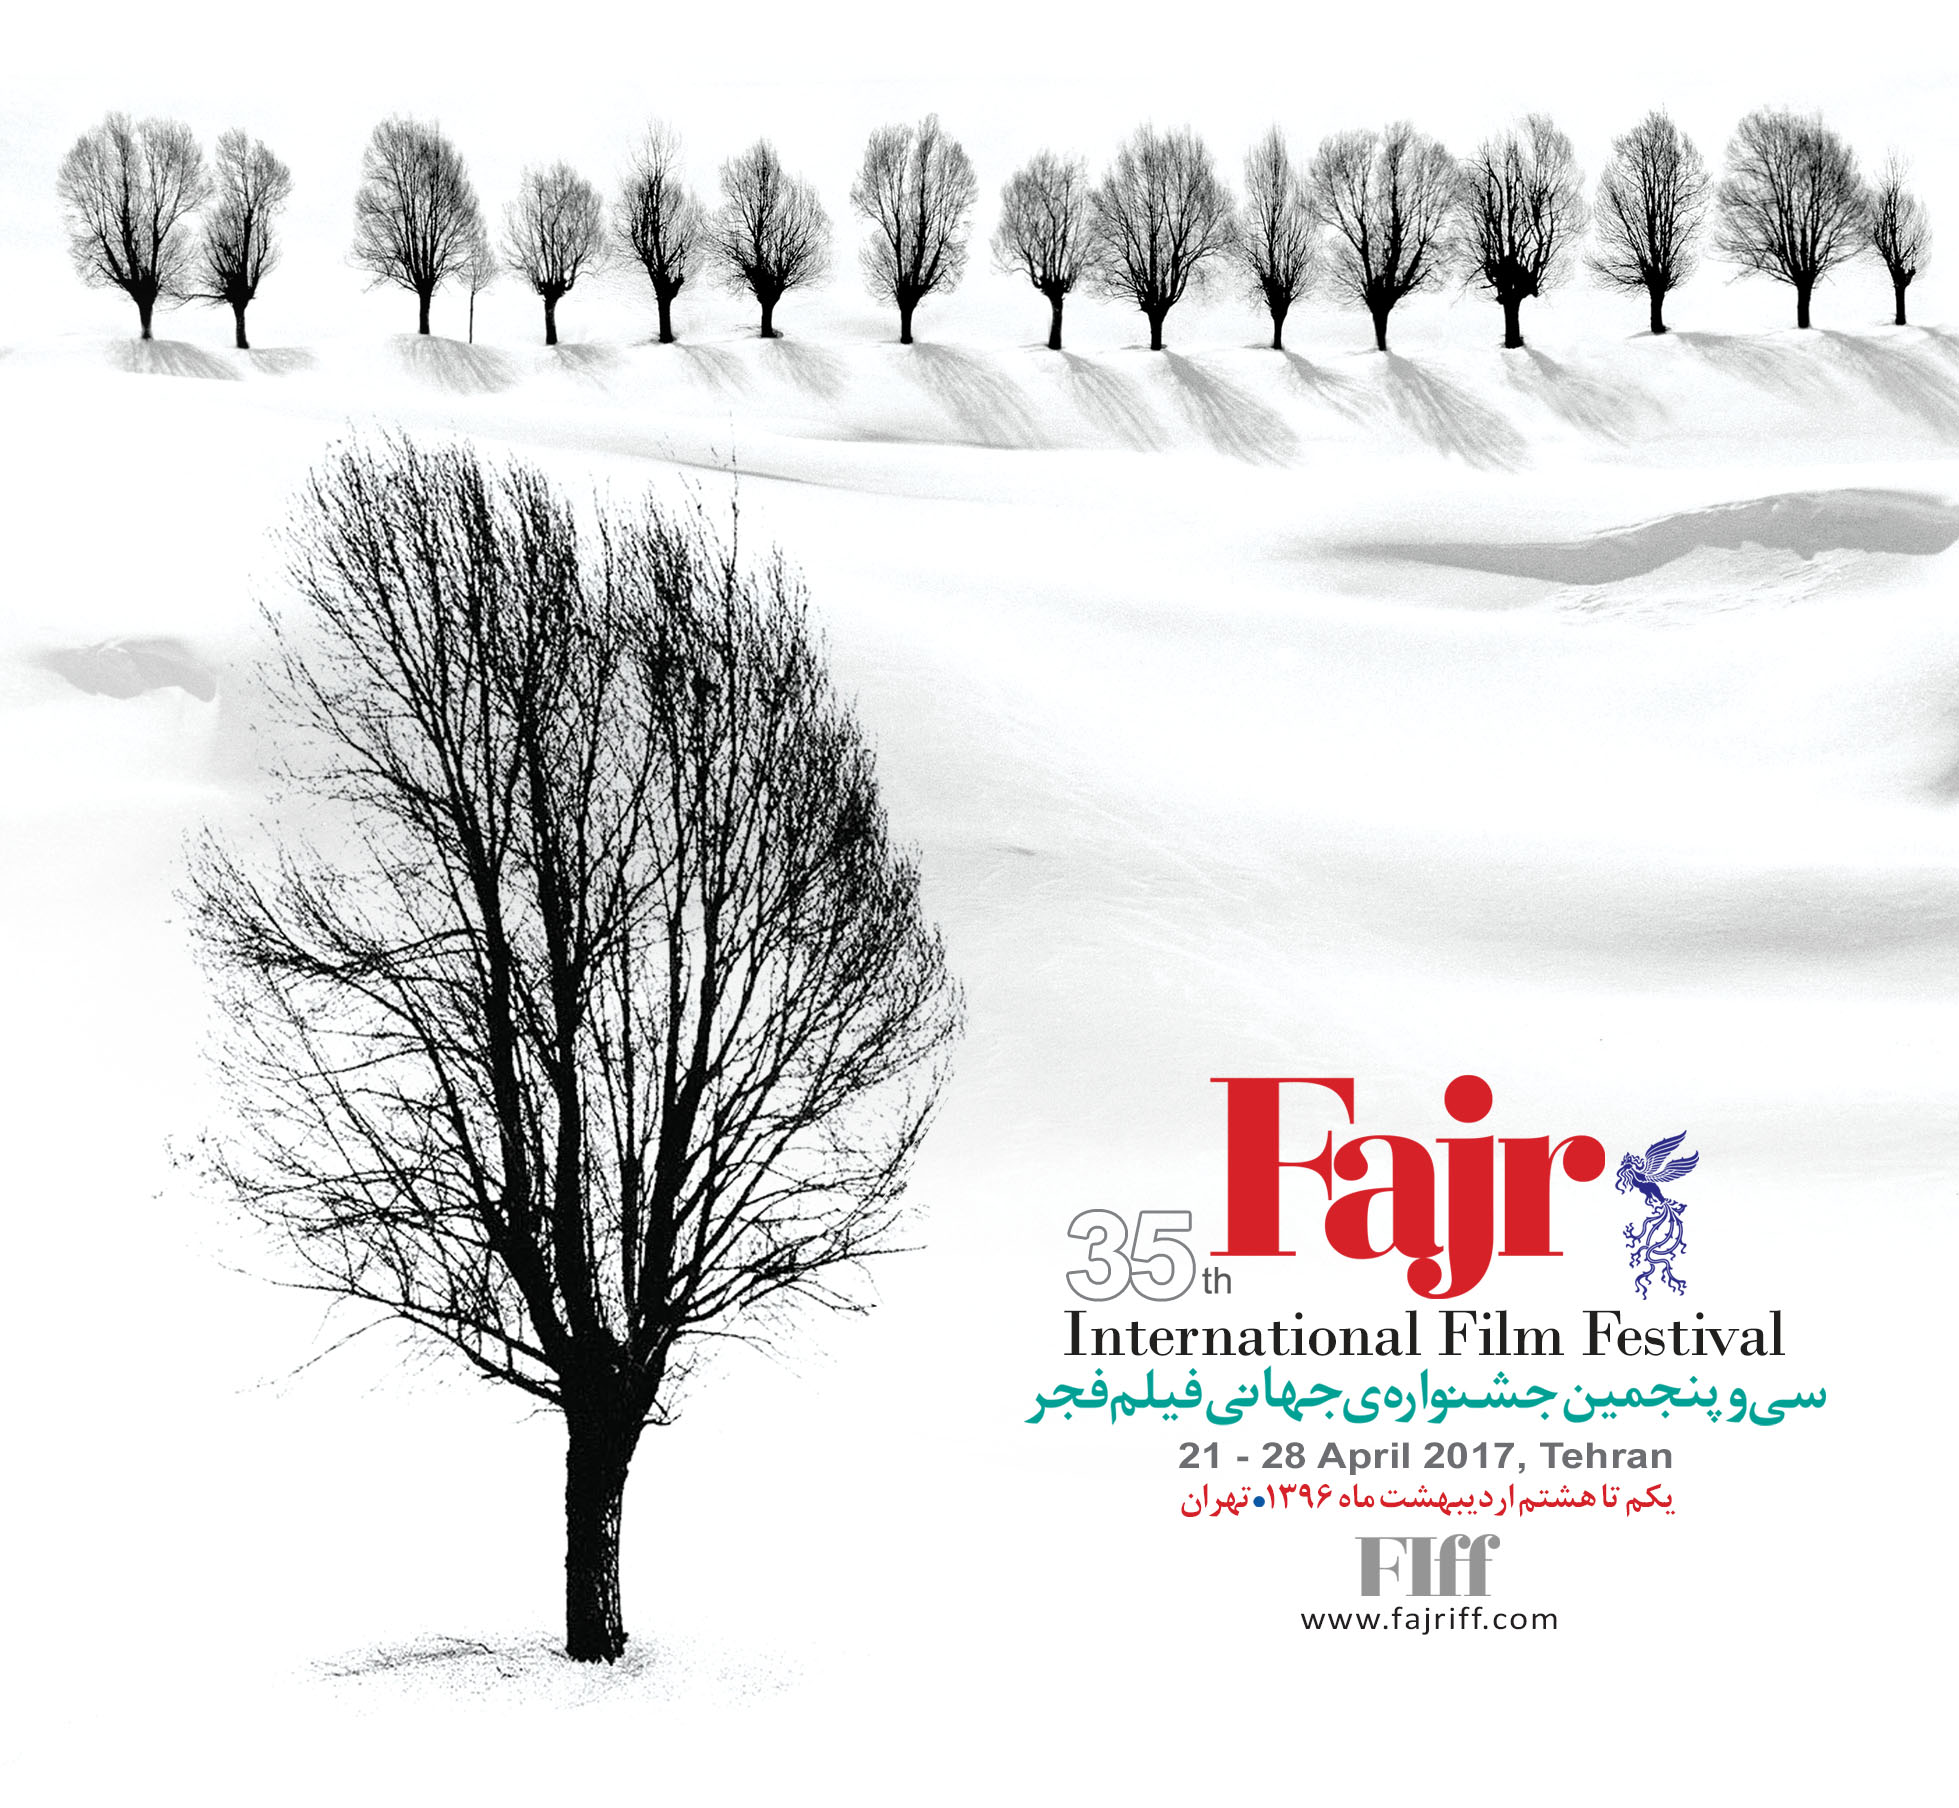 ۷۶ دقیقه و ۱۵ ثانیه با عباس کیارستمی در چهارمین روز جشنواره جهانی فجر